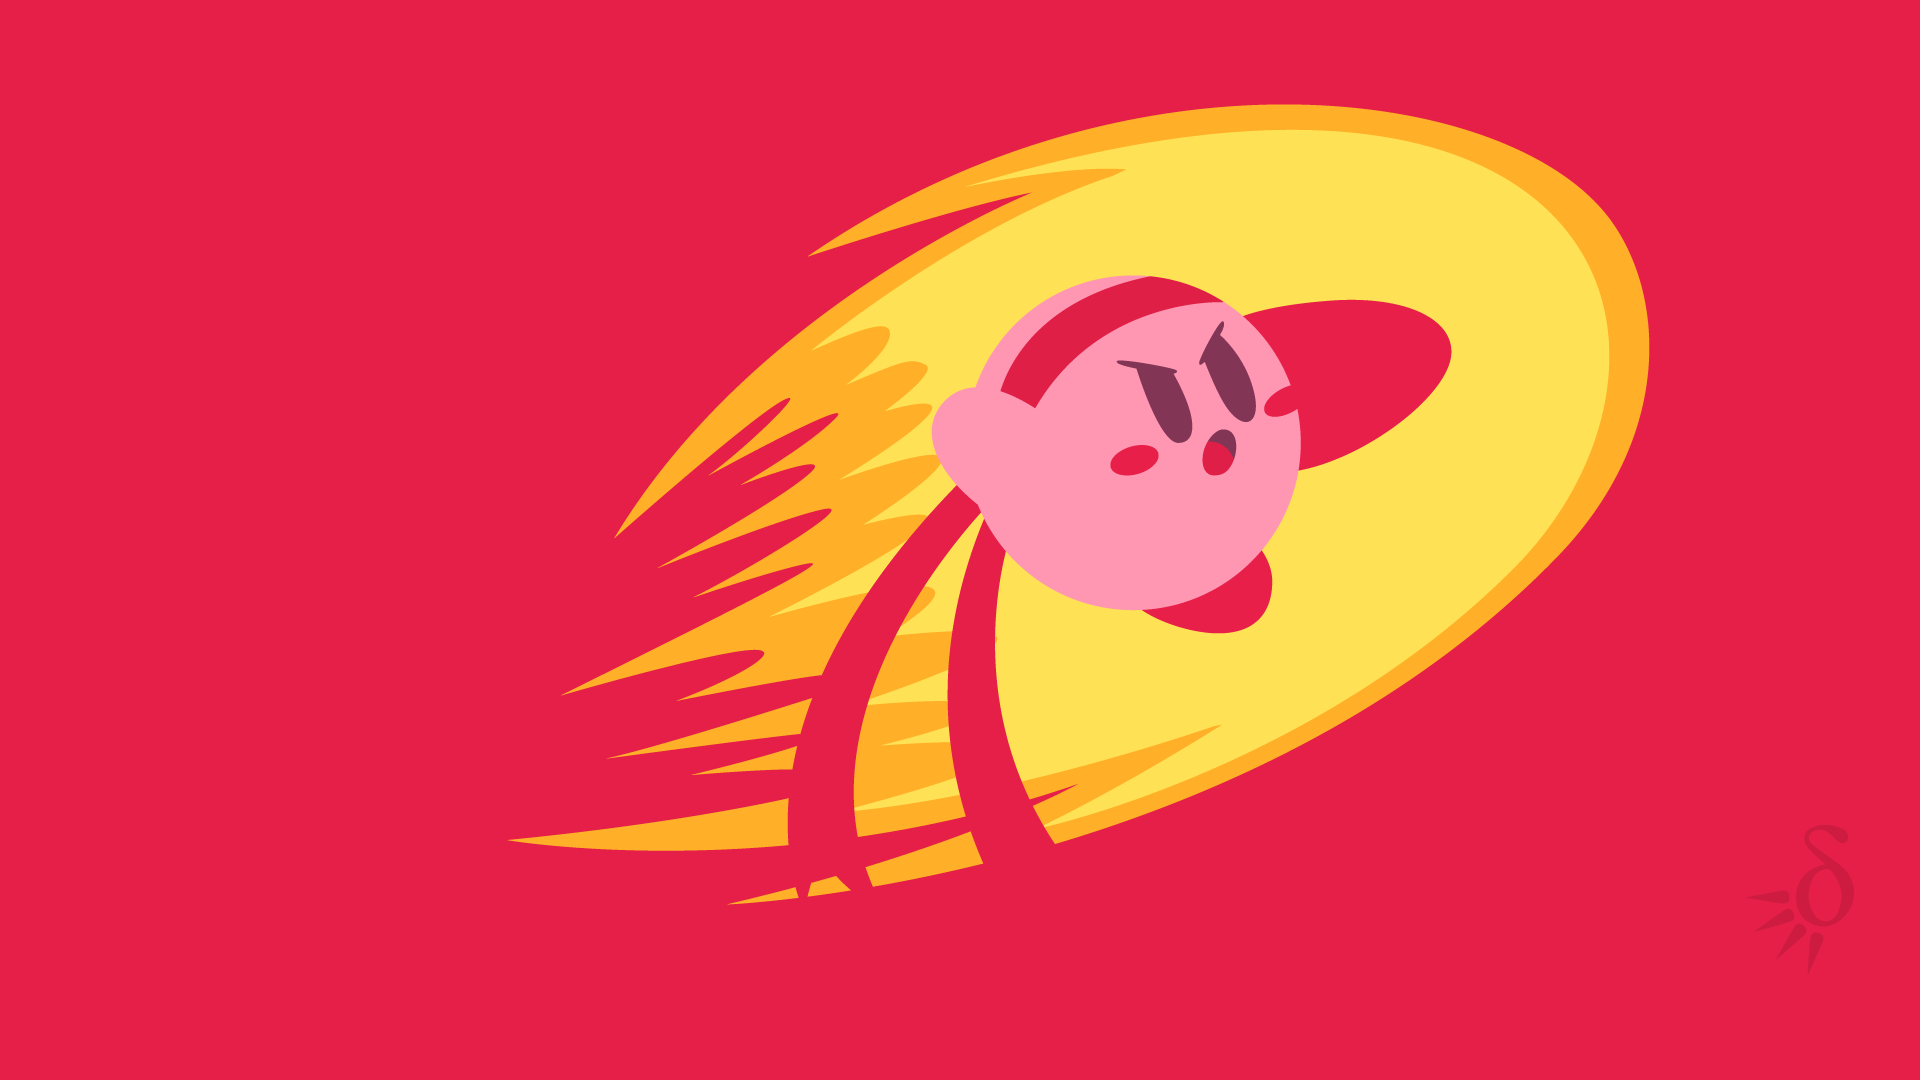 Fighter Kirby: Bạn yêu thích trò chơi đối kháng và muốn có một chiến binh với tốc độ và sức mạnh phi thường? Hãy xem hình ảnh Fighter Kirby để thấy những cú đấm và phát chưởng tuyệt đẹp của anh ta trong trò chơi Super Smash Bros.